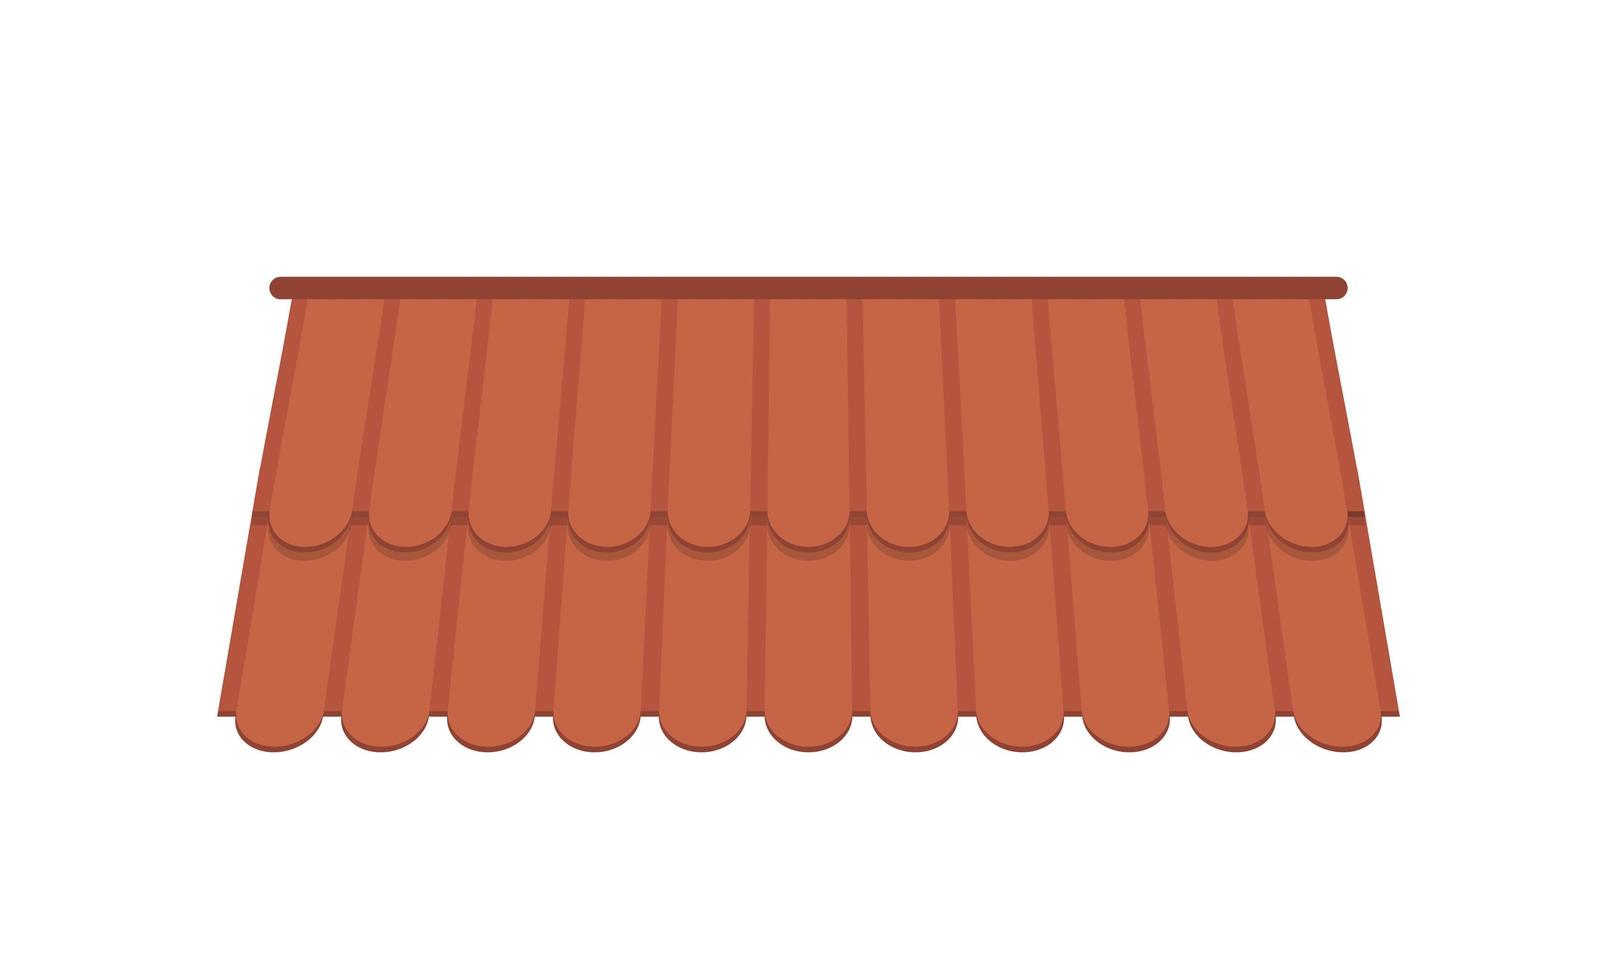 dak voor het ontwerp van zomerhuisjes. bruin pannendak geïsoleerd op een witte achtergrond. cartoon-stijl. vectorillustratie. vector